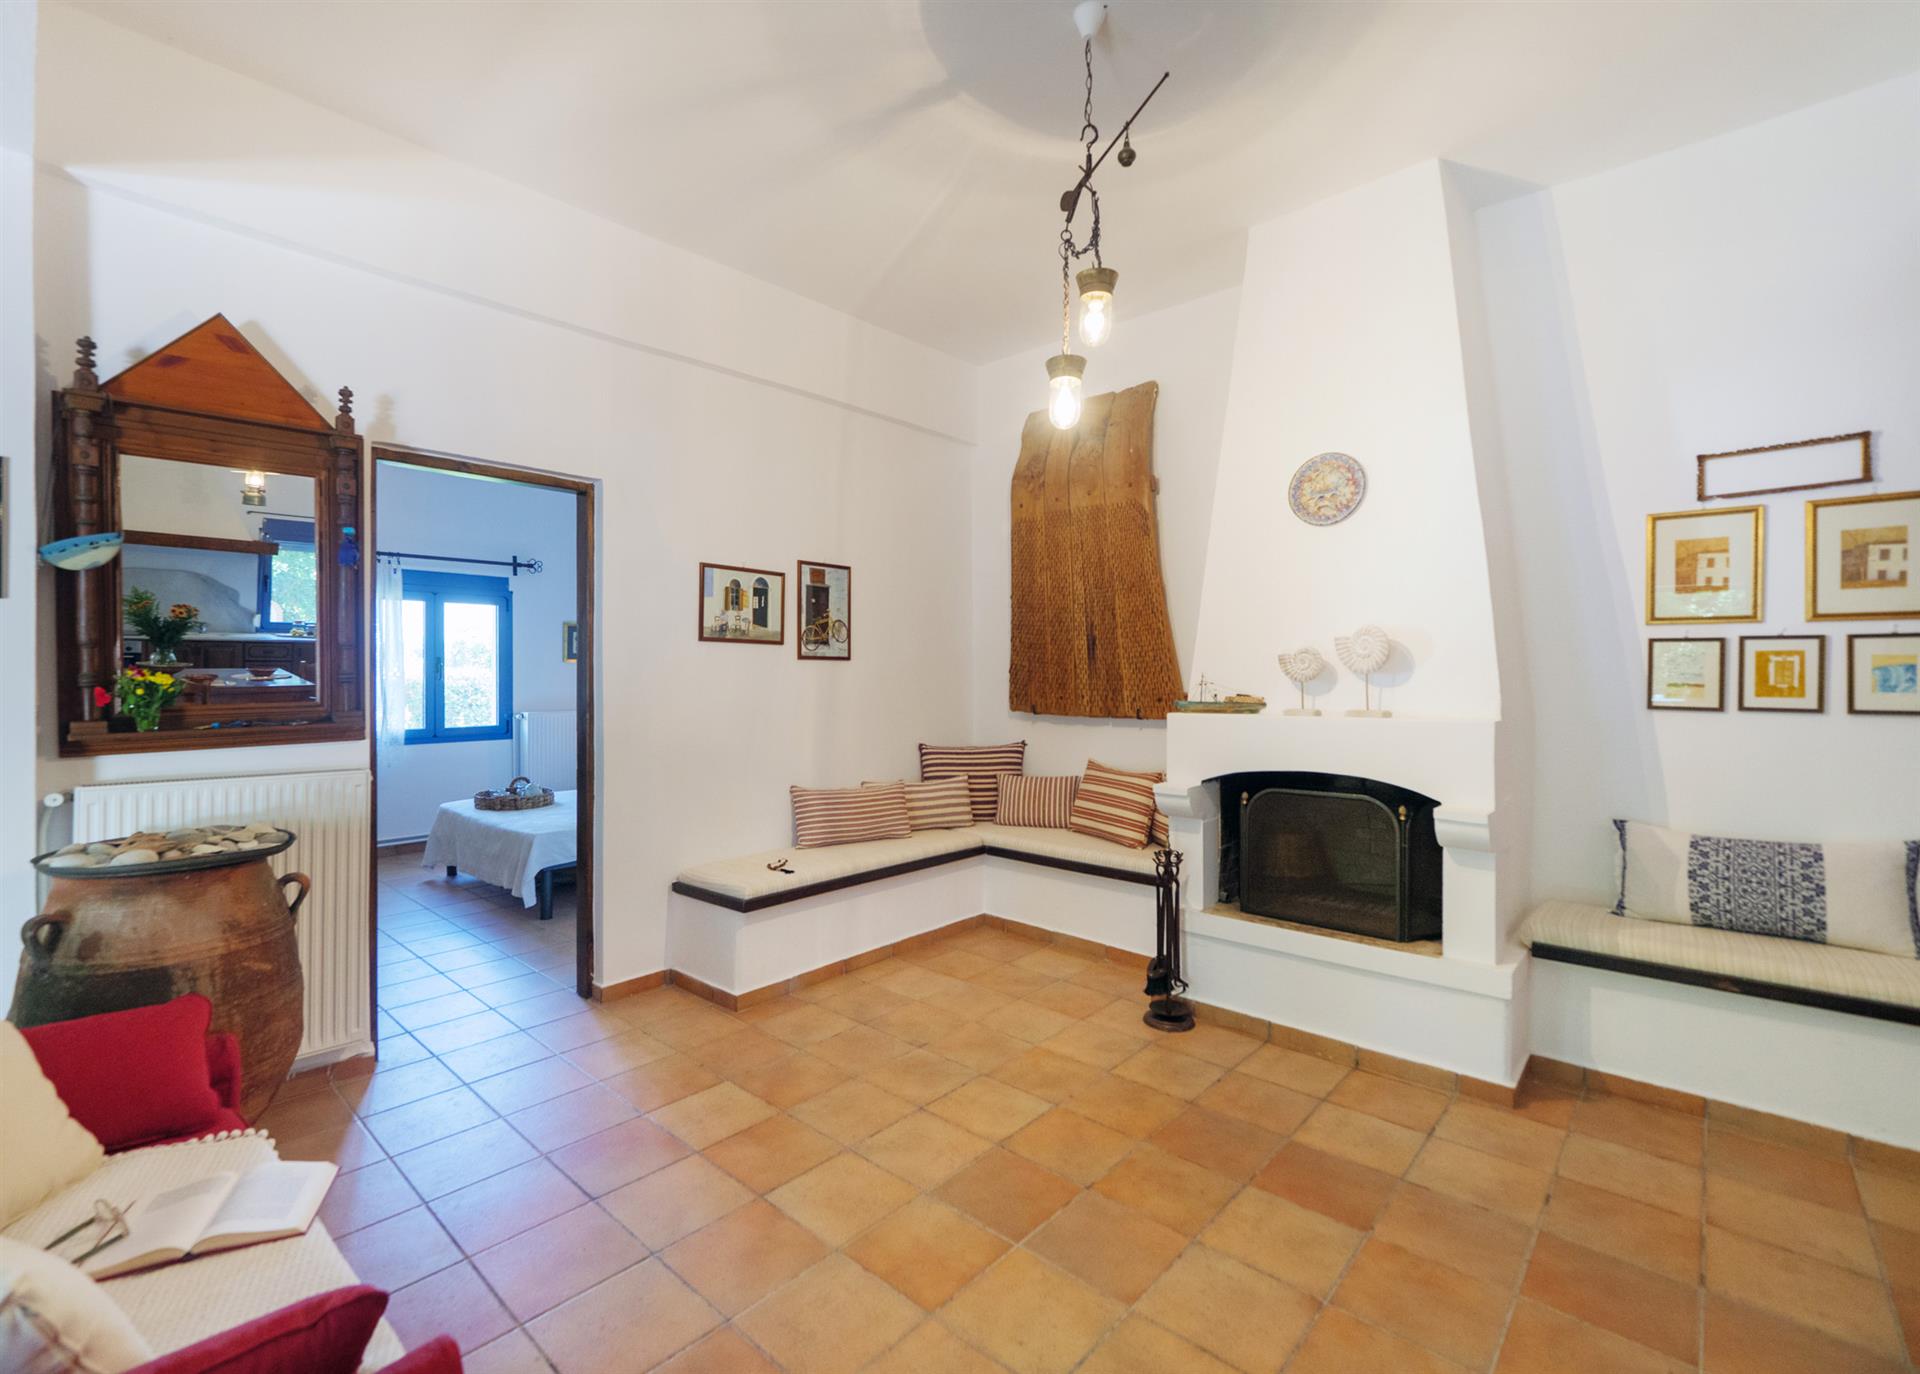 Heraklion Frettchen . Zum Verkauf steht ein voll ausgestattetes traditionelles Haus von 140 m² auf 